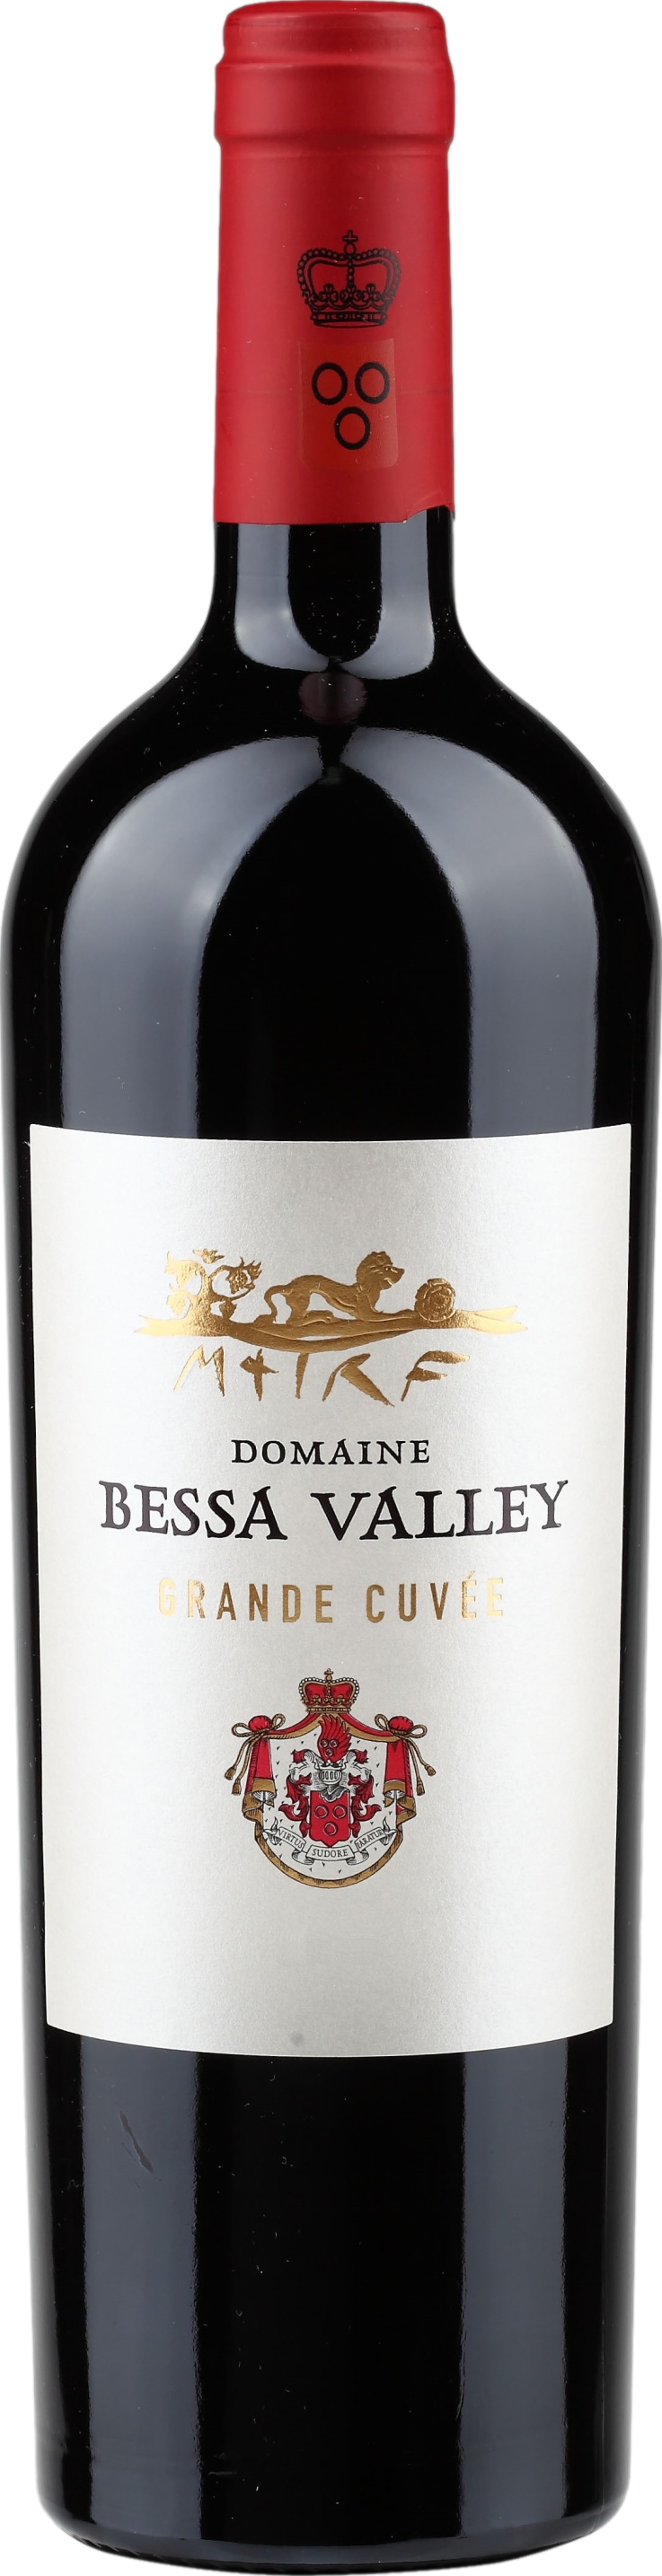 Bessa Valley Grande Cuvee 2018 Červené 14.5% 0.75 l